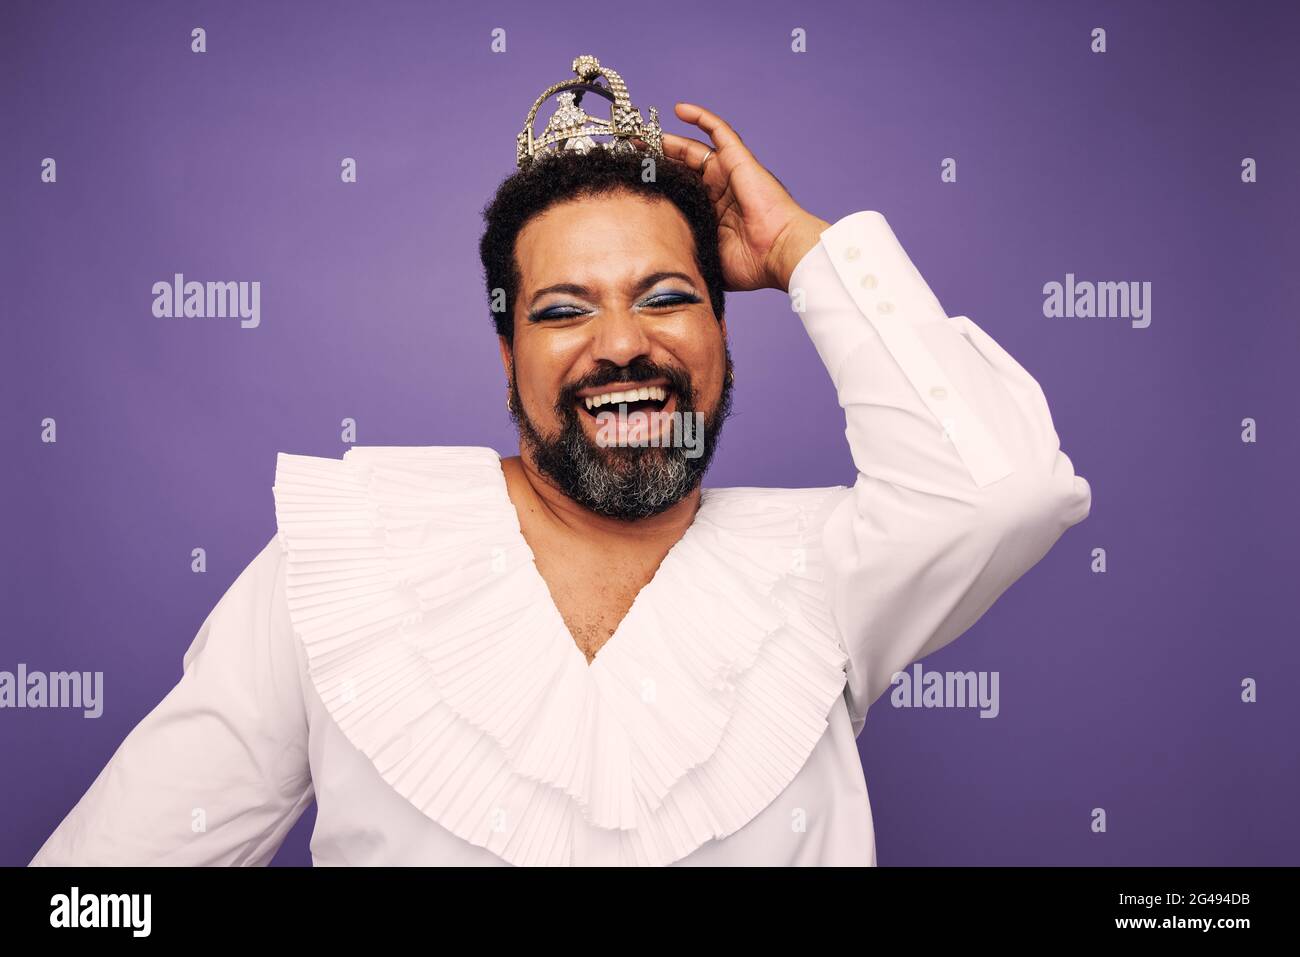 Porträt einer Drag Queen lächelt auf violettem Hintergrund. Bärtiger Mann mit Make-up und Krone auf dem Kopf. Stockfoto